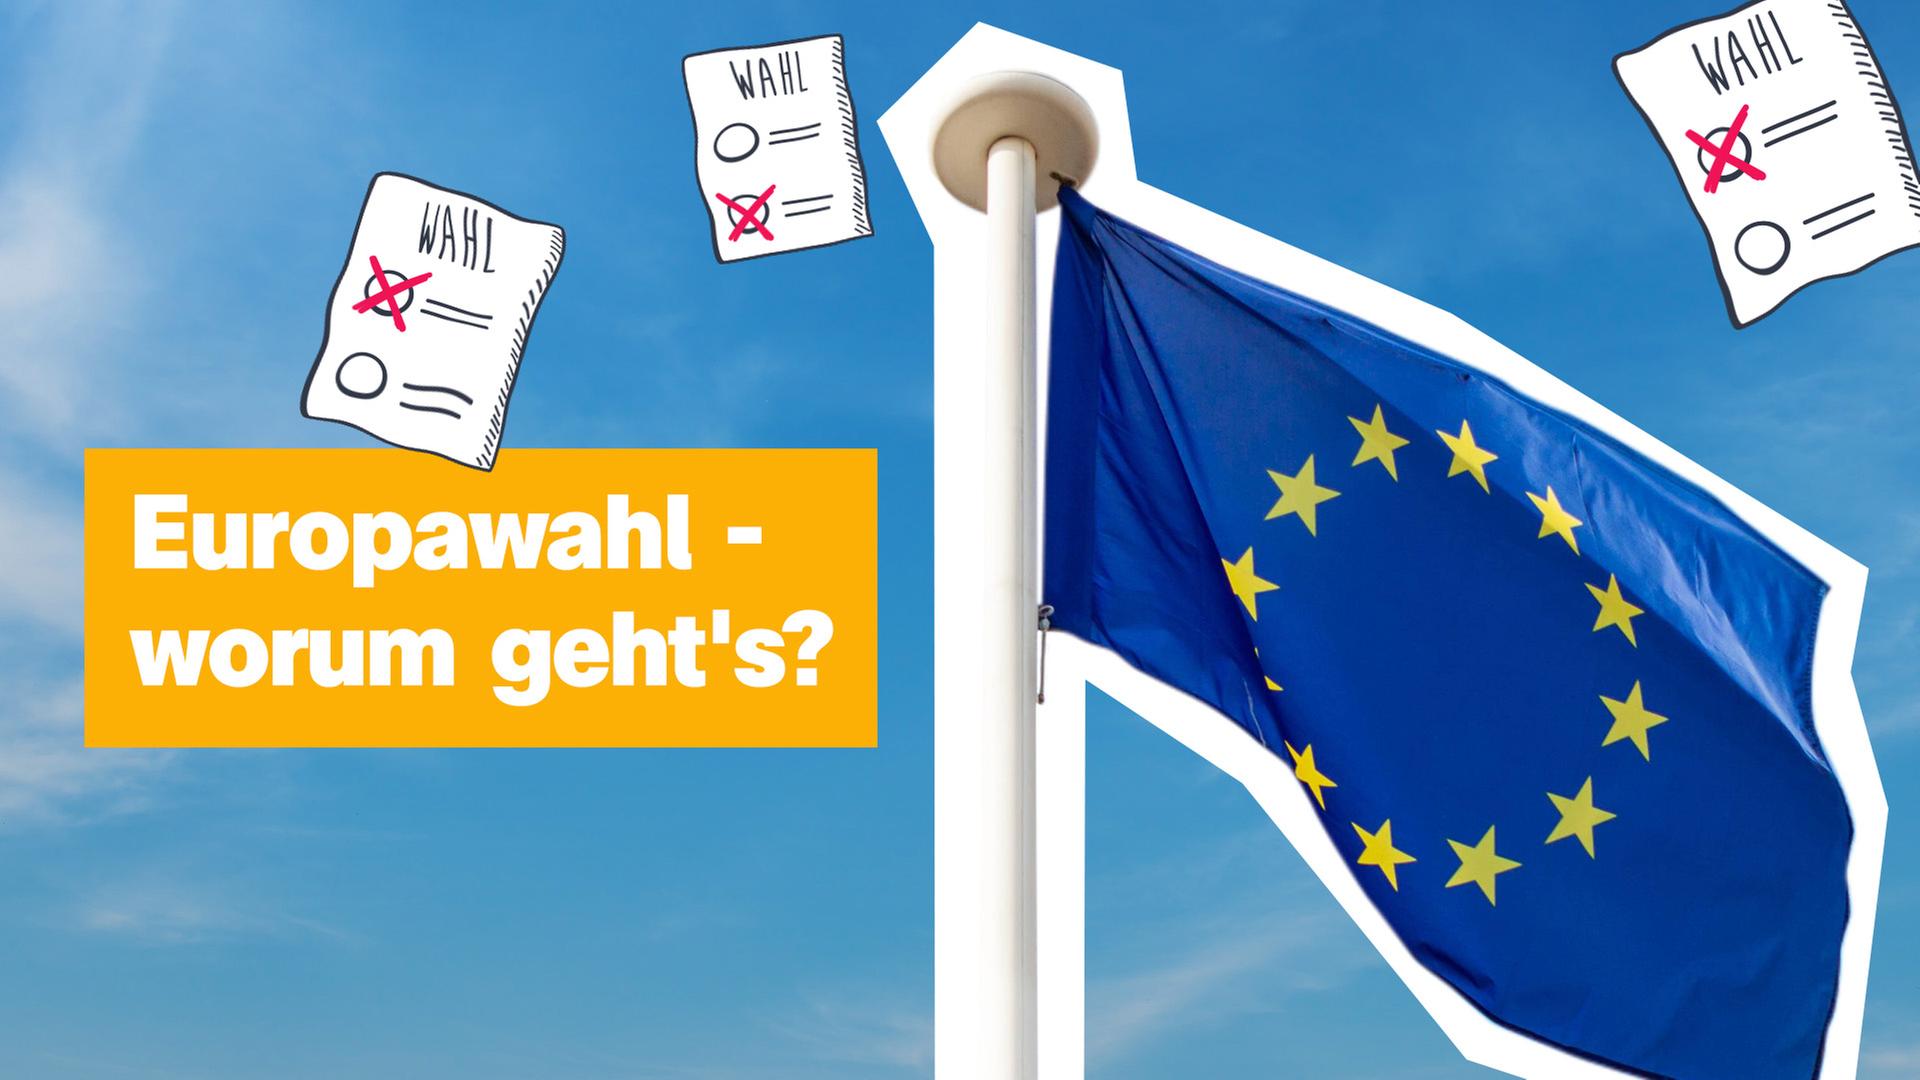 Europawahl - worum geht es? Wahlzettel und Flagge